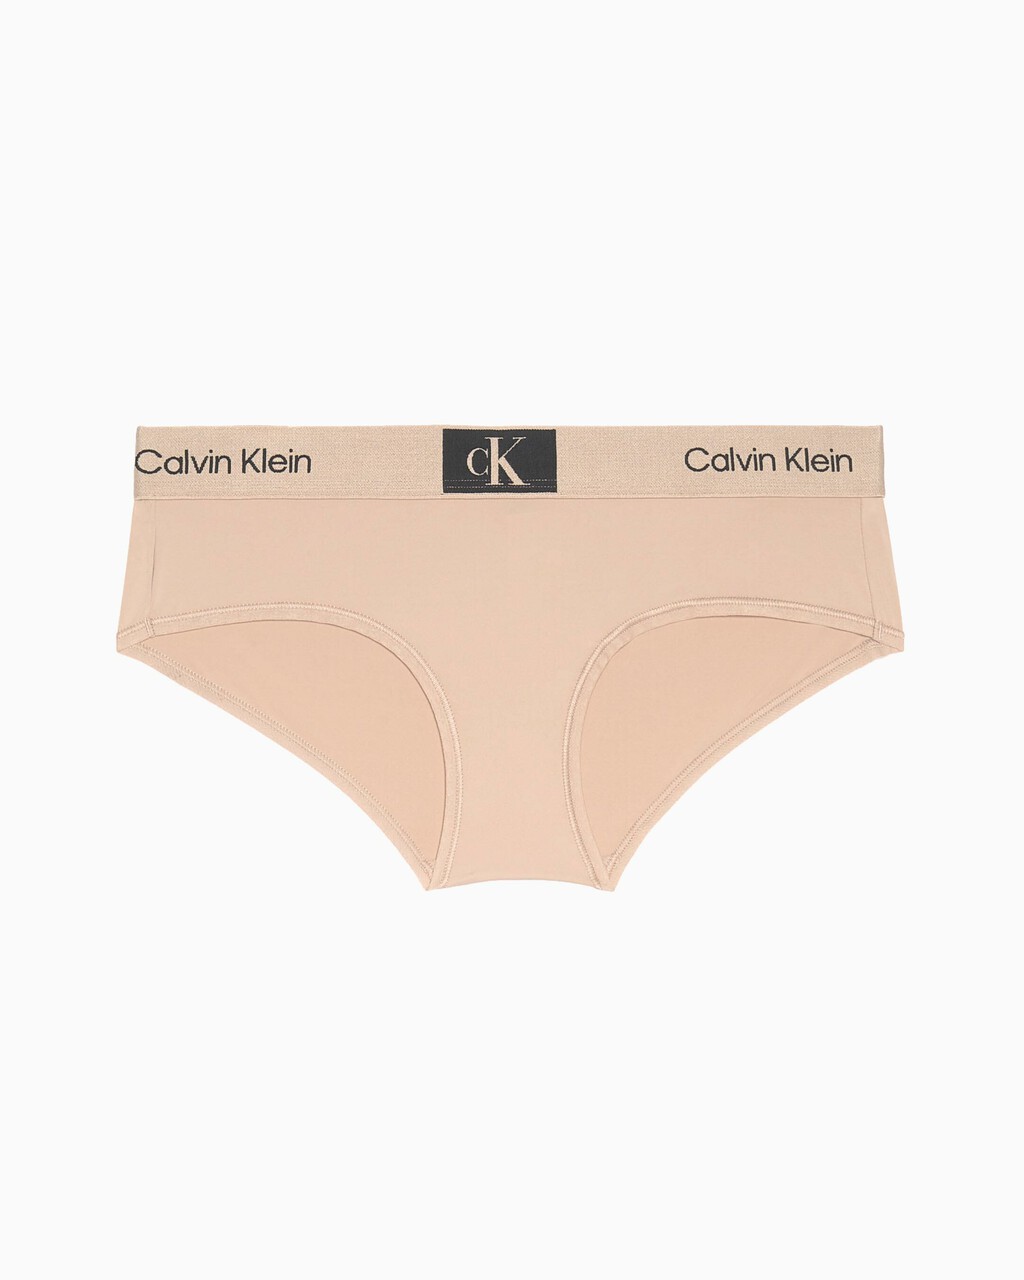 Calvin Klein 1996 Hipster, natural